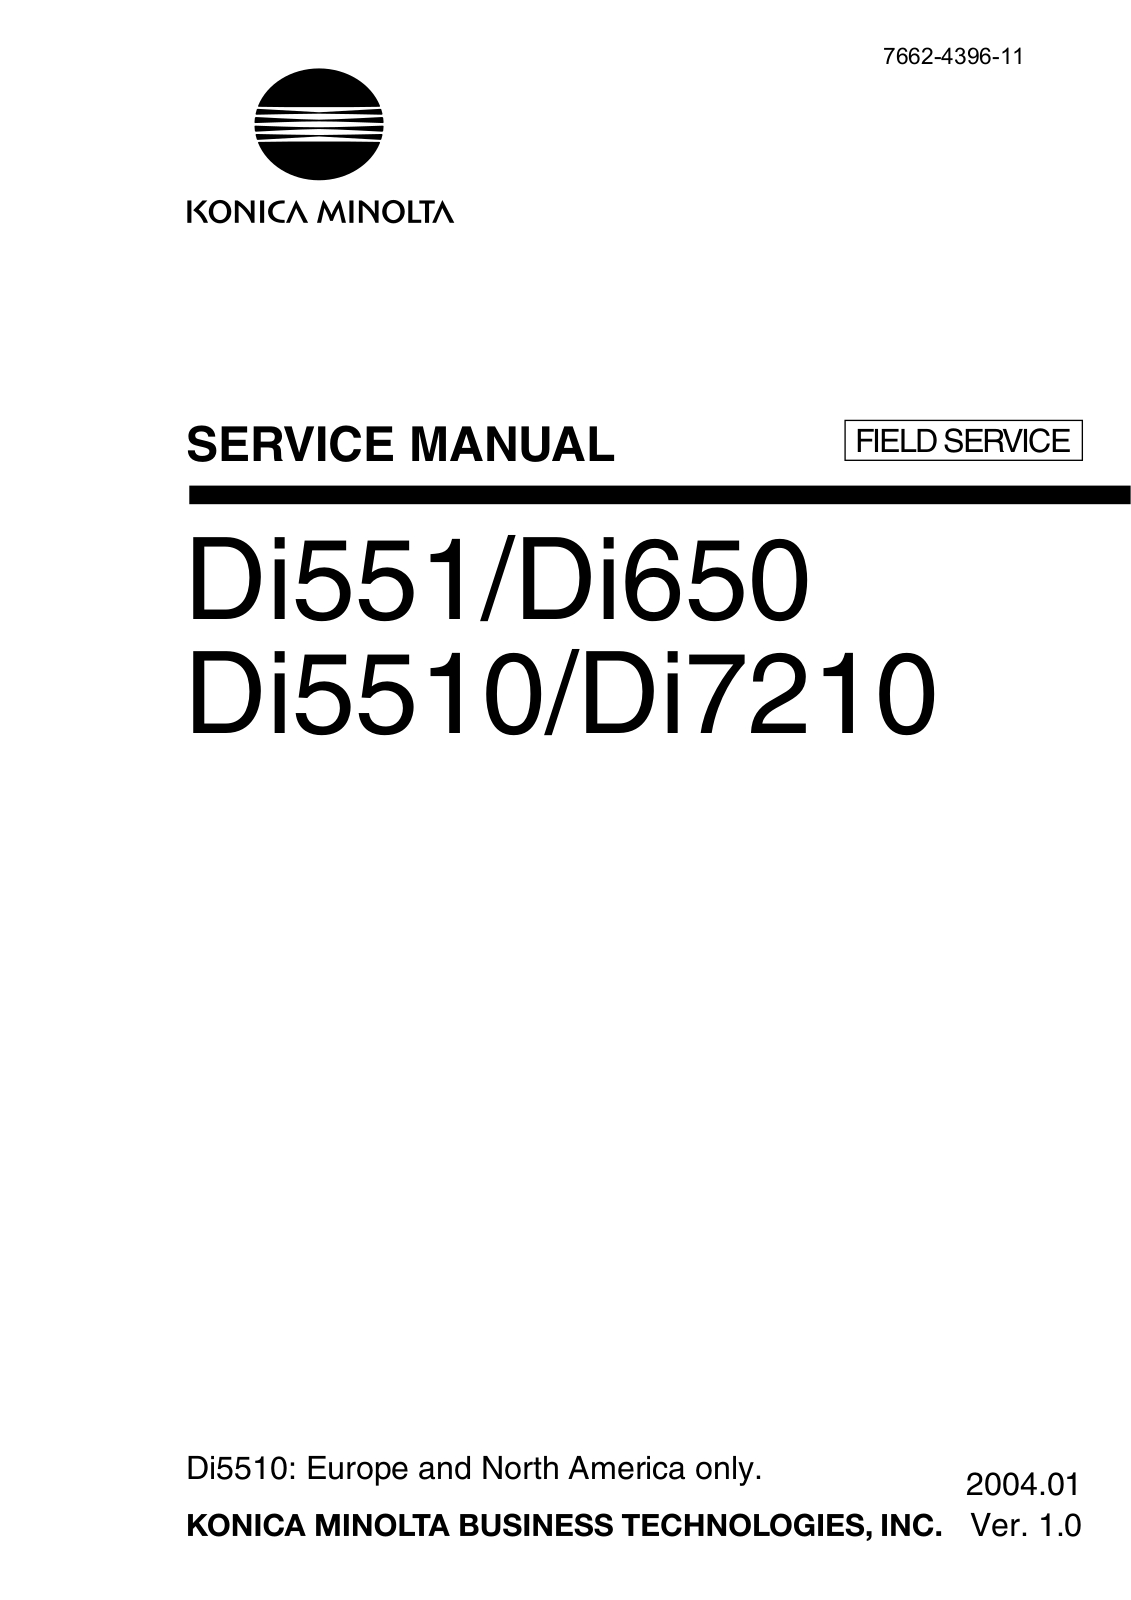 Konica Minolta DI5510, COVER INSERTER B DI5510/DI7210, C-404 DI5510/DI7210, FN-115 DI5510/DI7210, FN-10 Manual